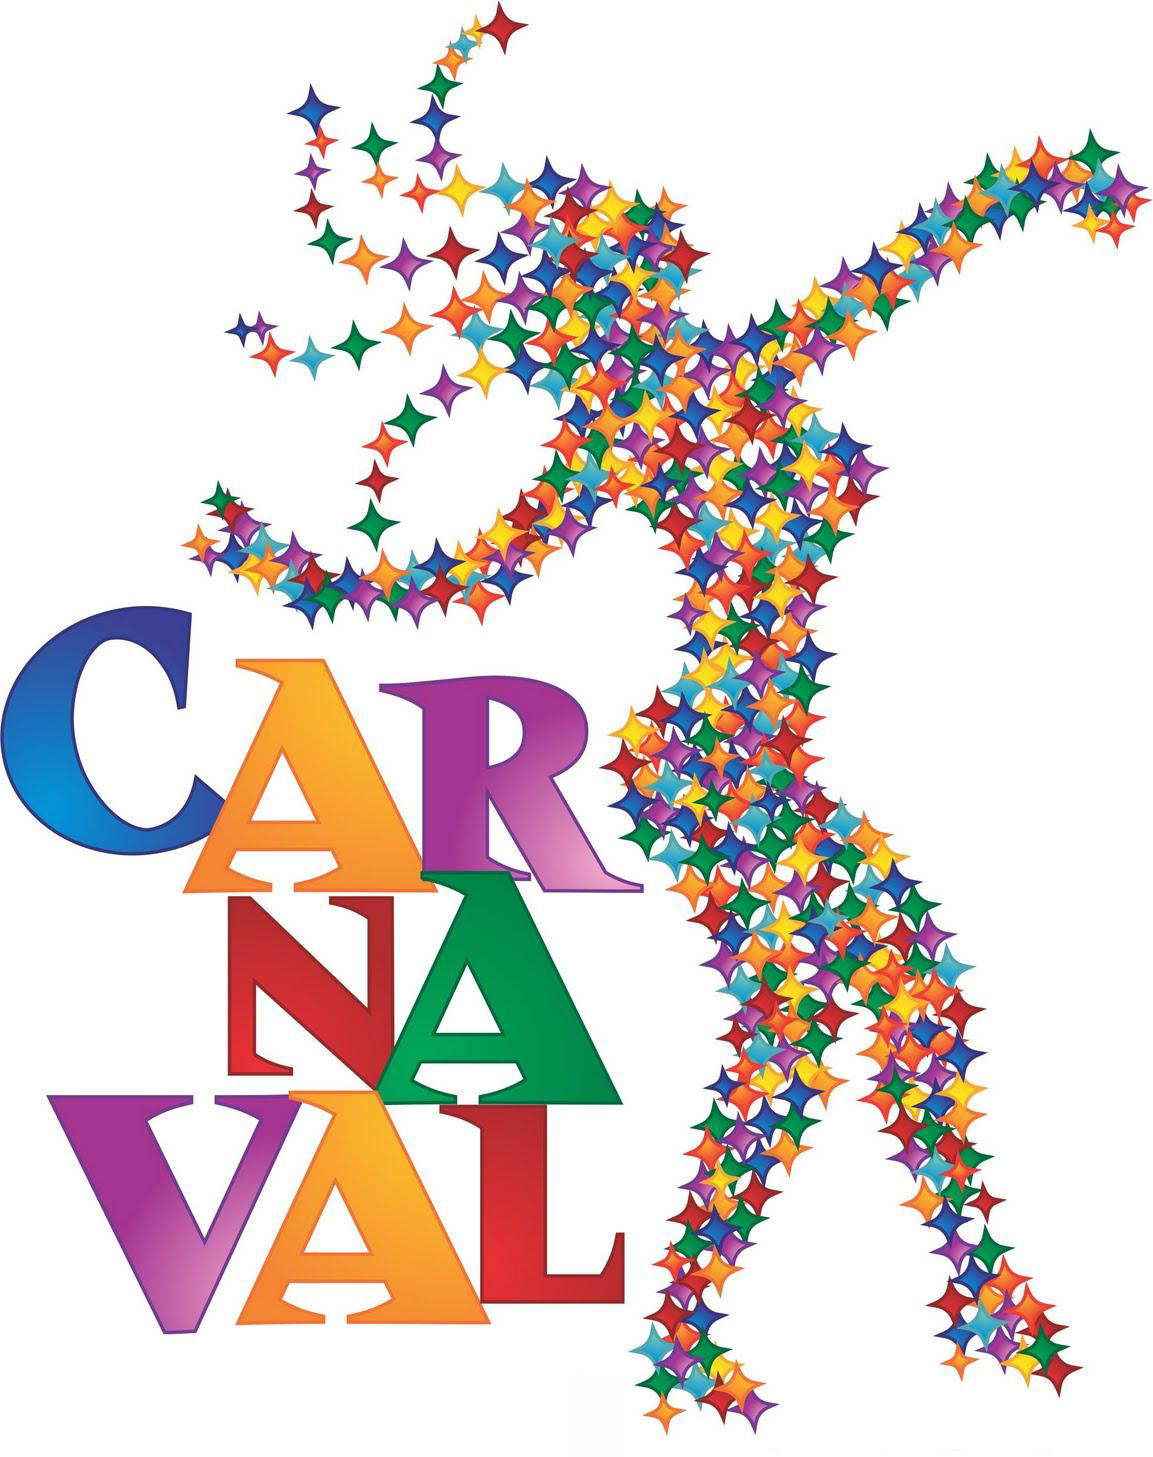 História do Carnaval no Brasil - CDLRio